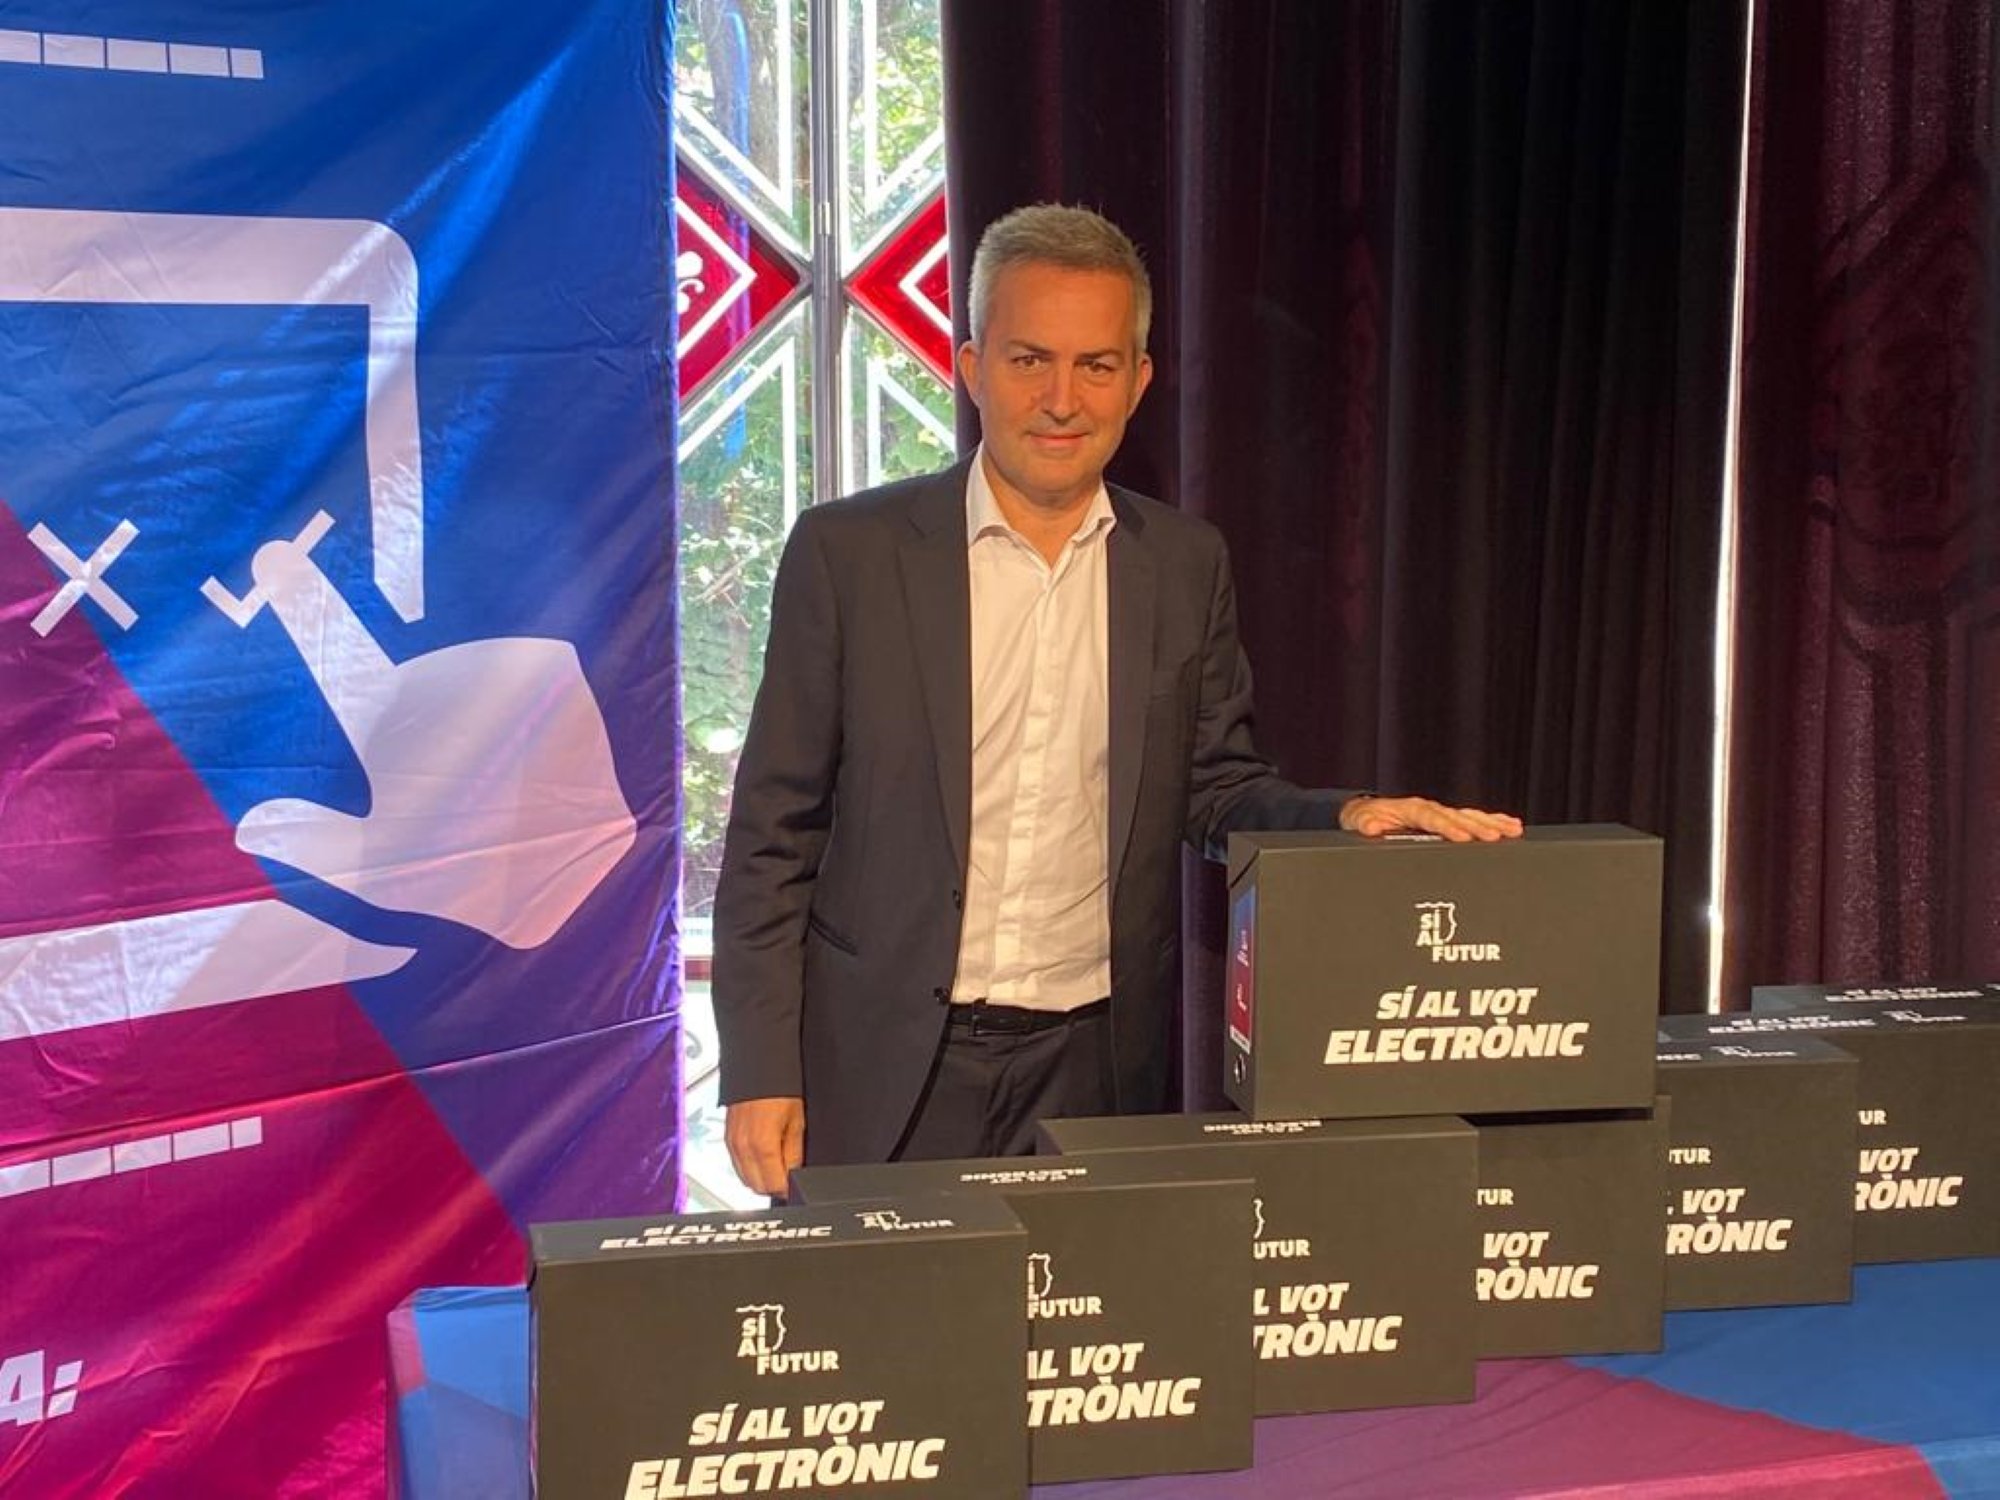 La implementación del voto electrónico se debatirá en la asamblea de socios del Barça